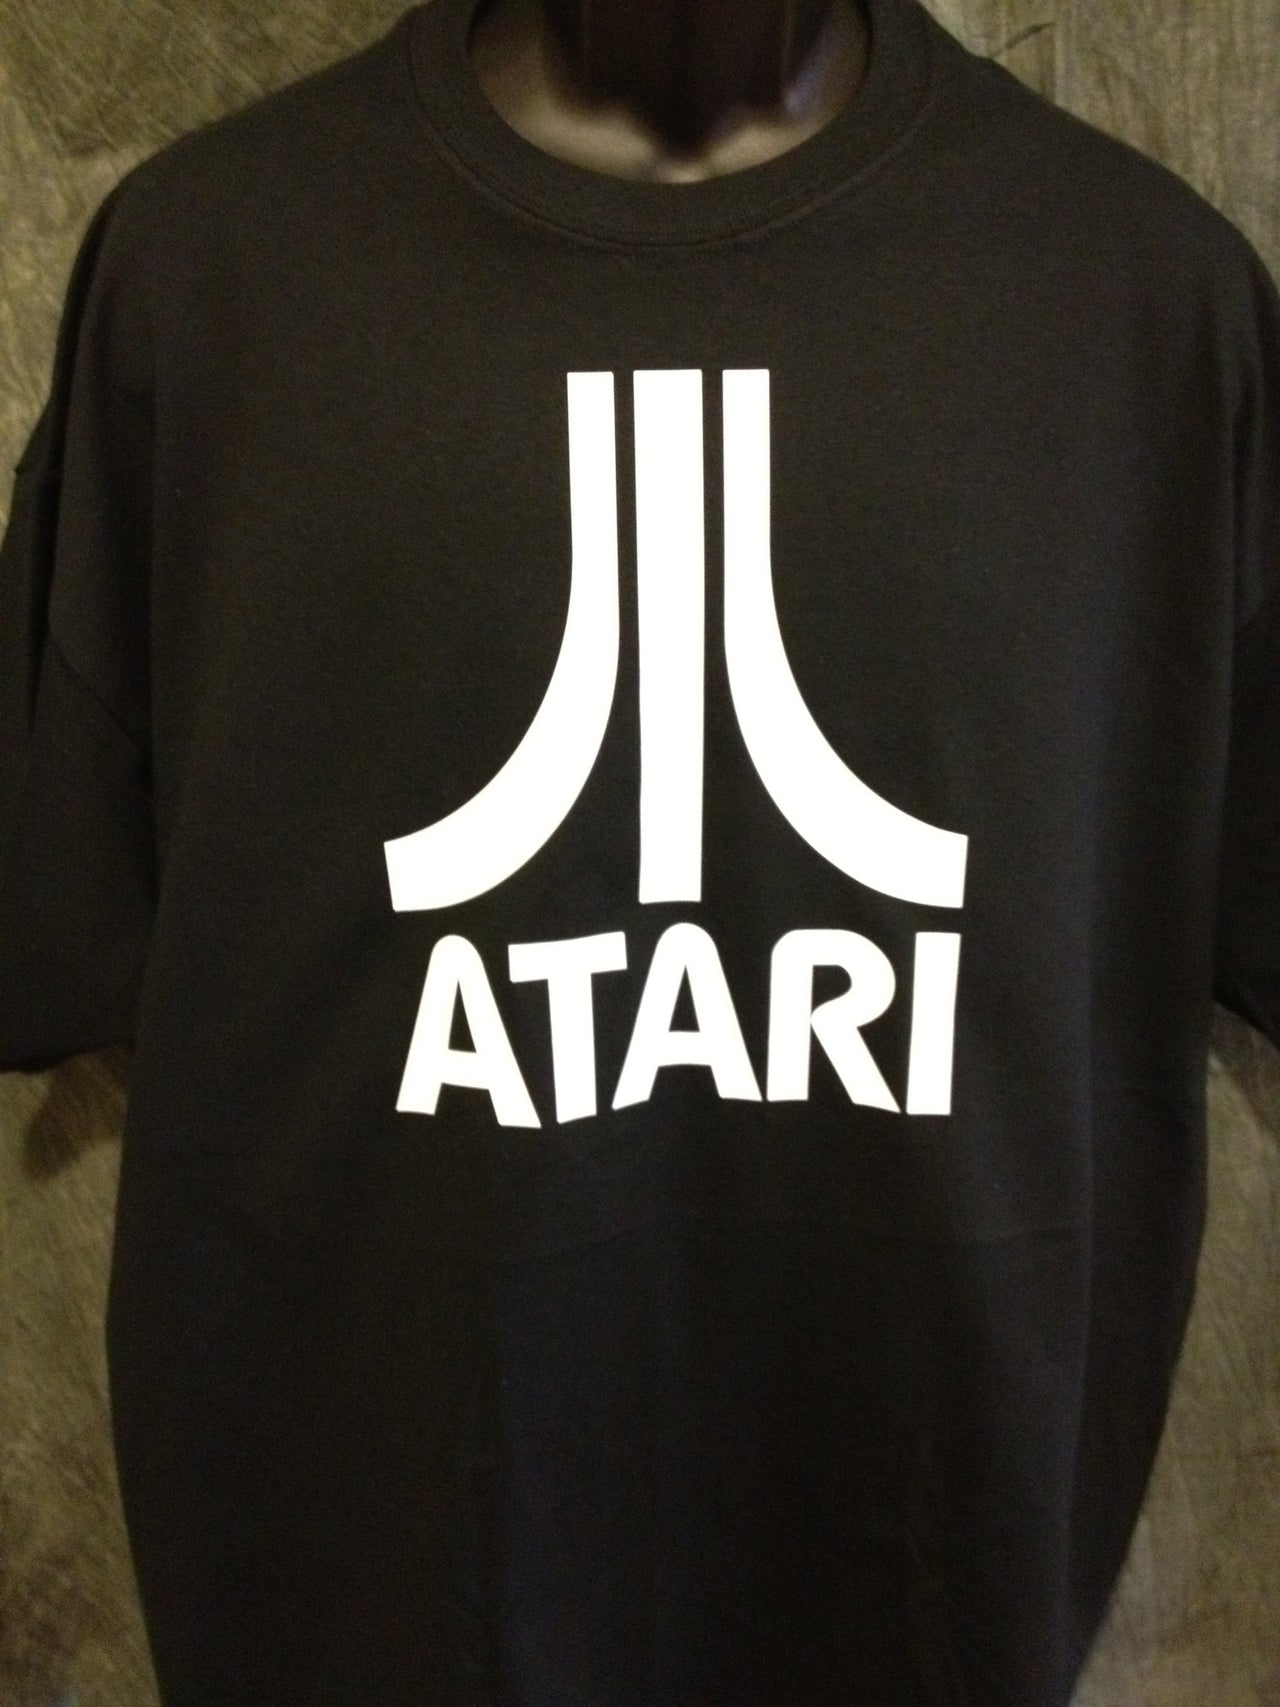 Atari Logo Tshirt: Black With White Print - TshirtNow.net - 1